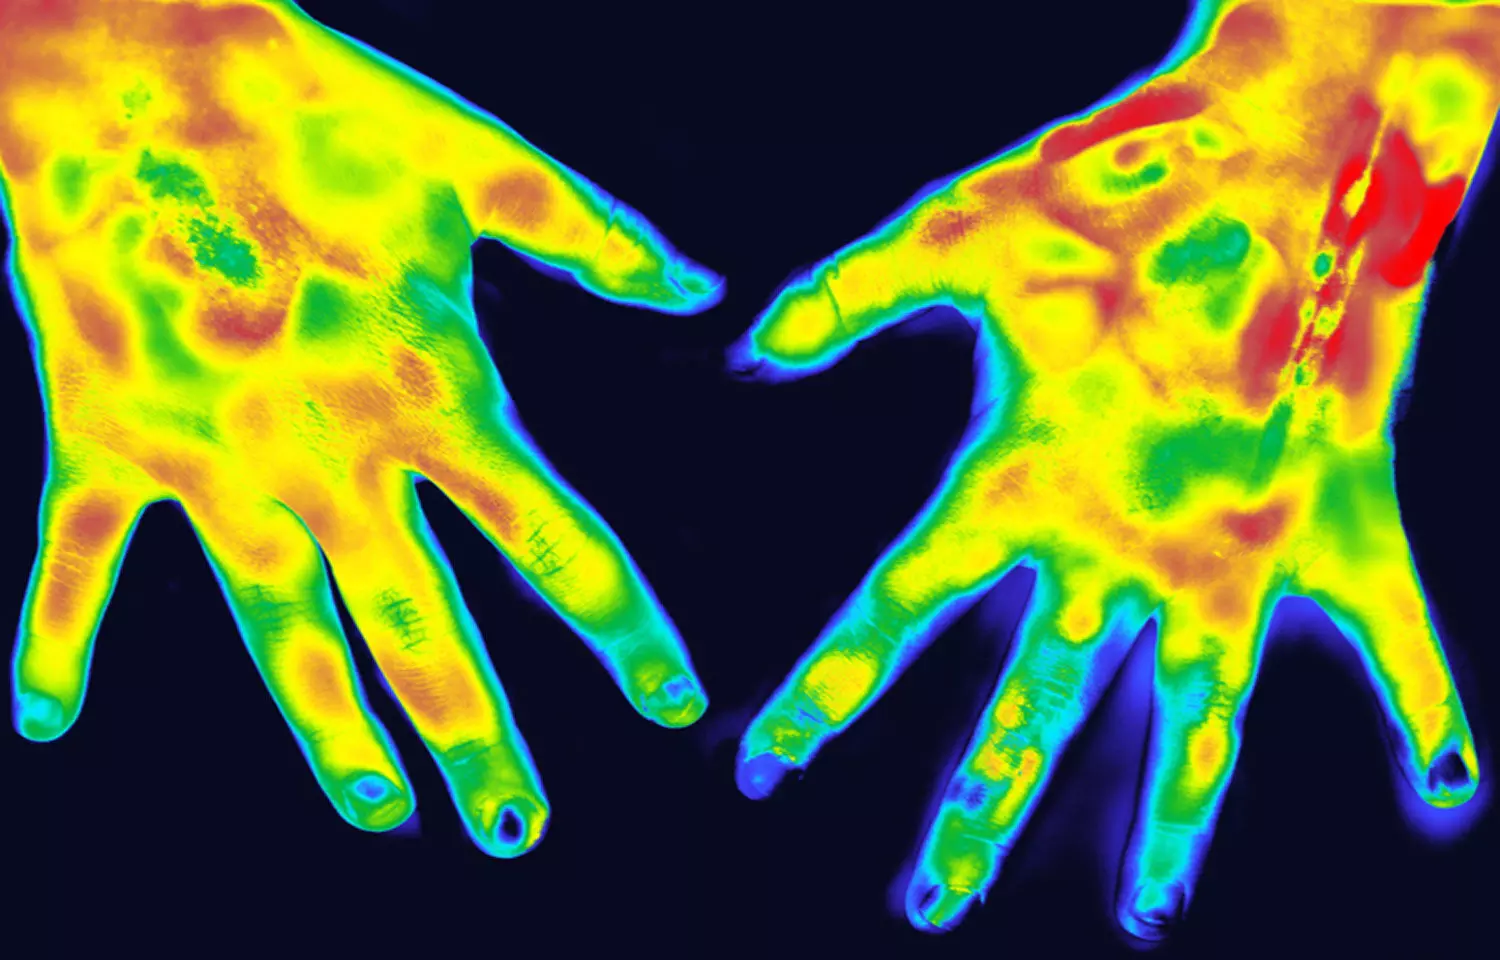 Thermography effective imaging method for rheumatoid arthritis: Study